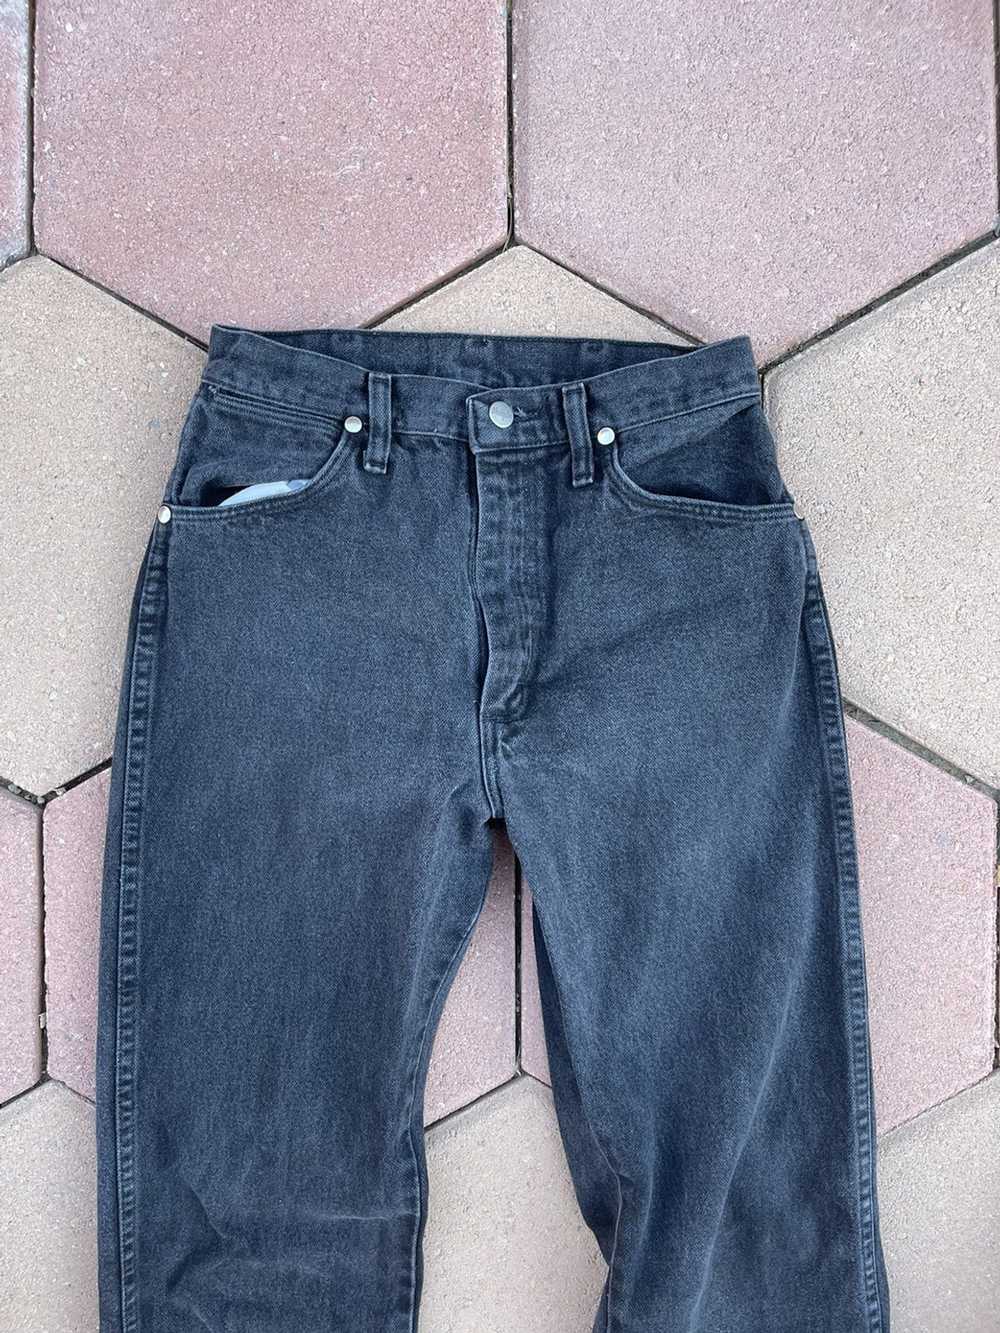 Vintage × Wrangler Vintage Wrangler Denim Jeans - image 2